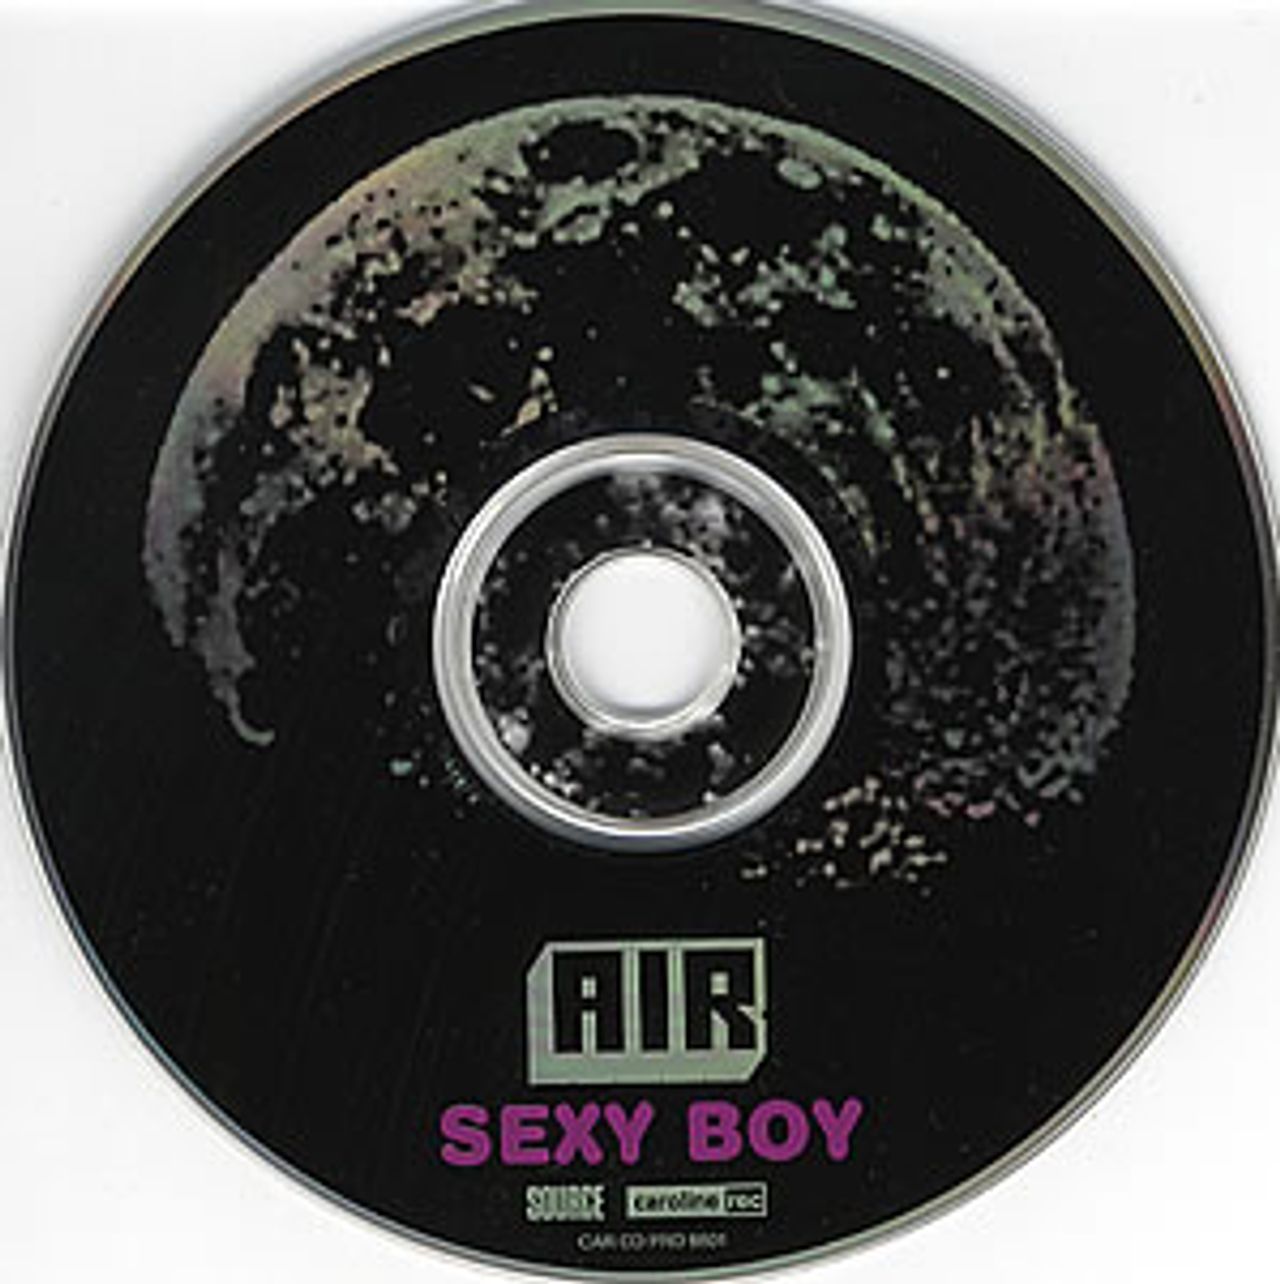 Air (French) Sexy Boy US Promo CD single — RareVinyl.com